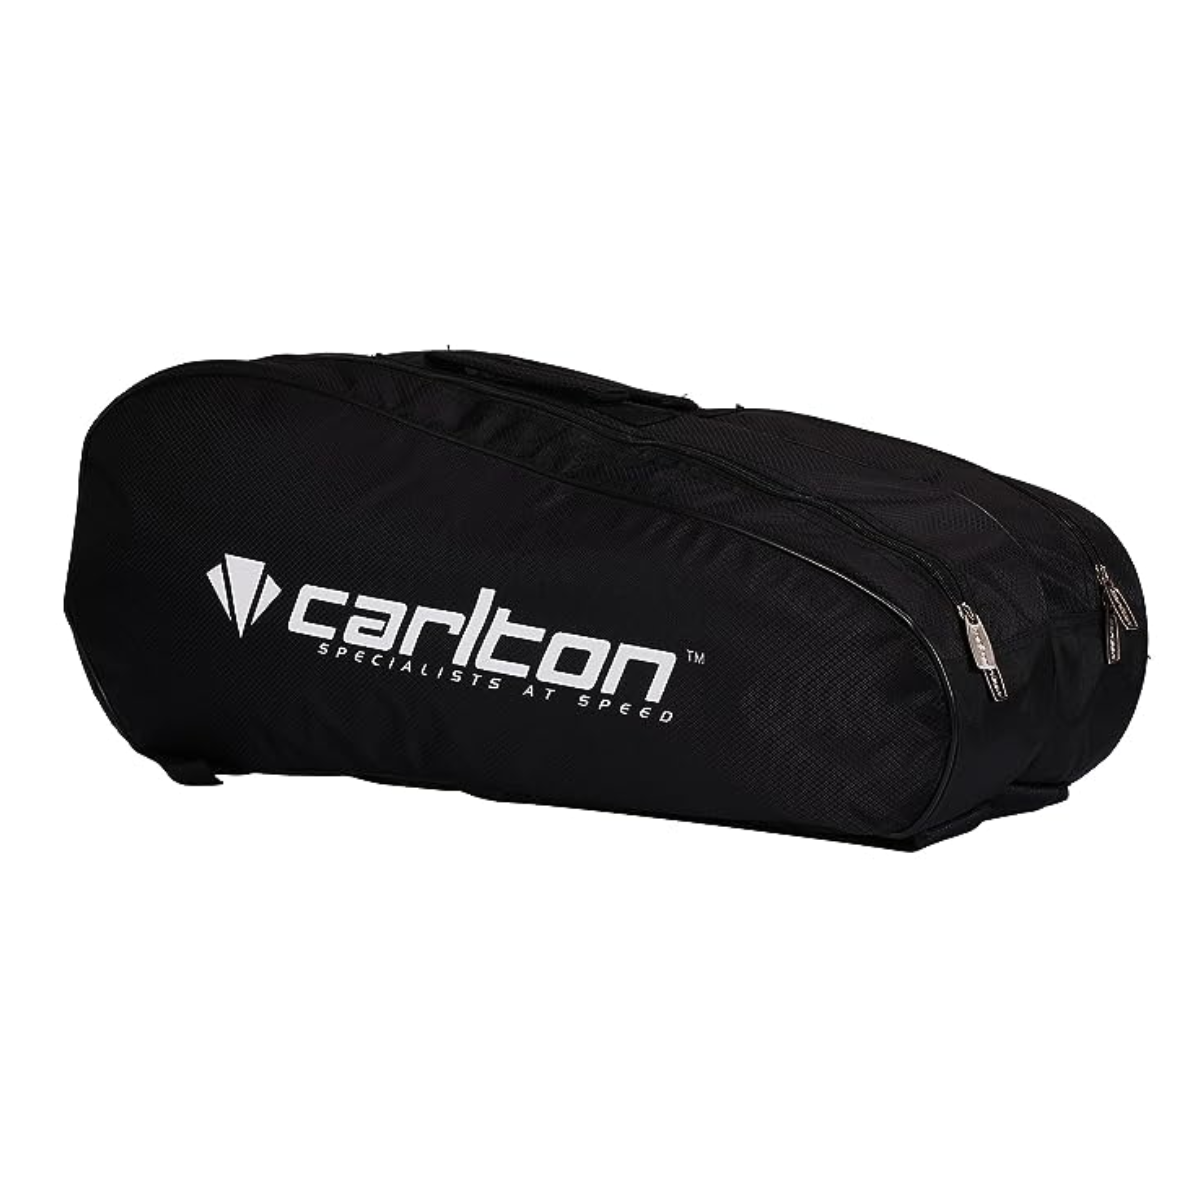 Carlton Vapour Trial 2 Compartment Badminton Kit Bag (Black/Blue)